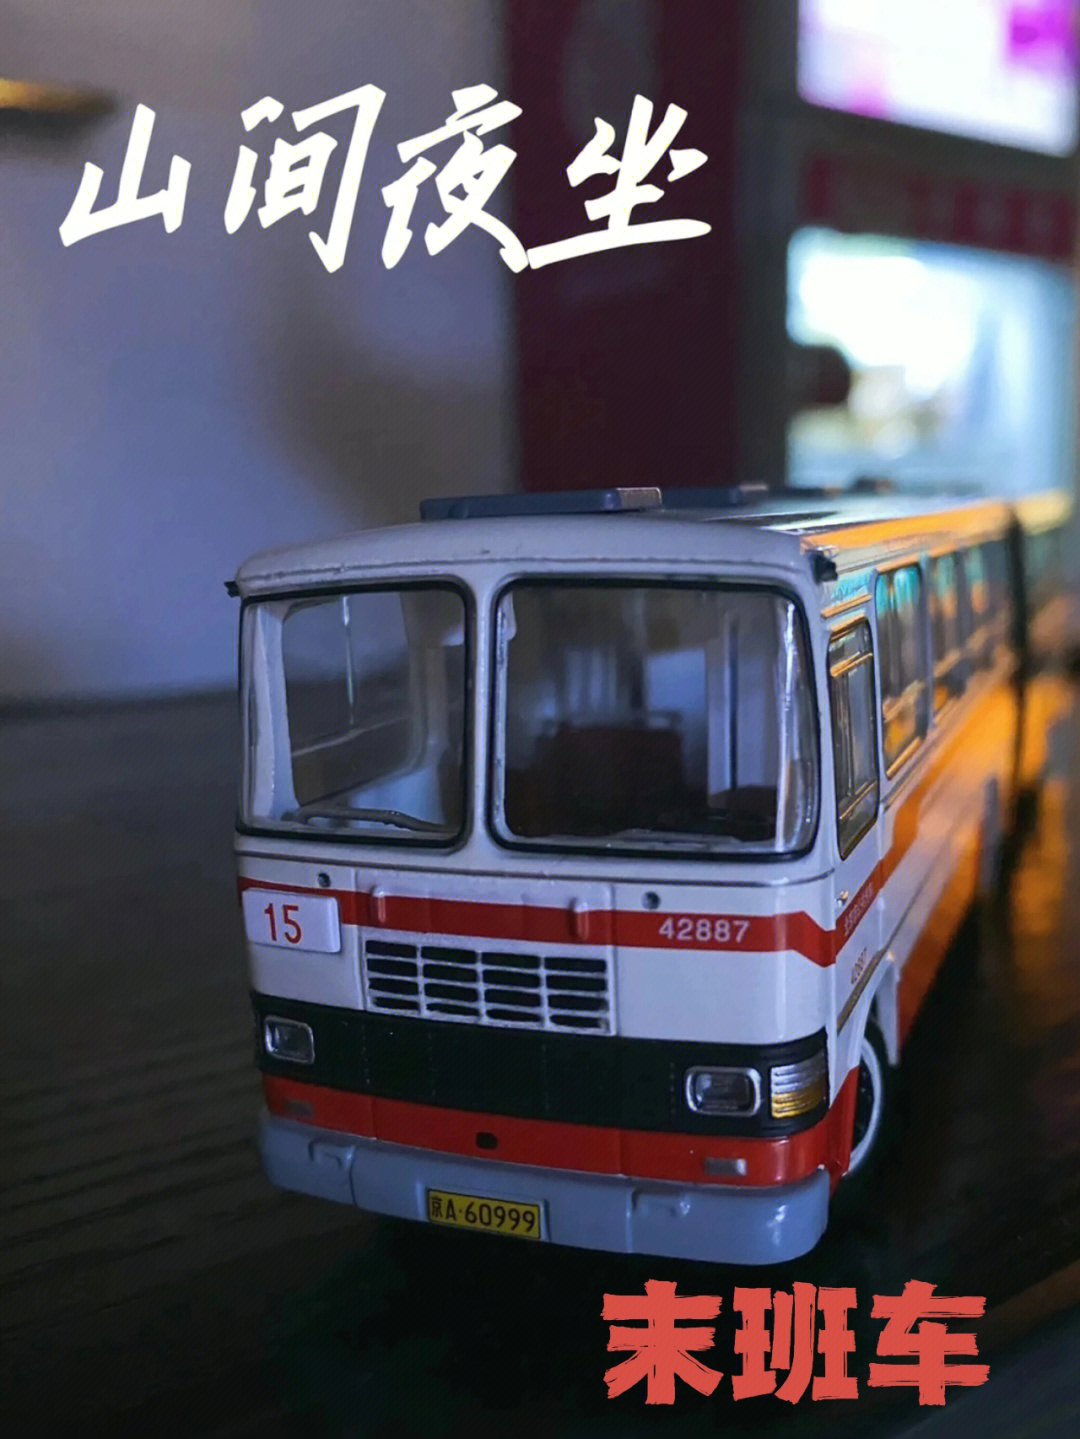 北京375路公交车灵异事件改编密室